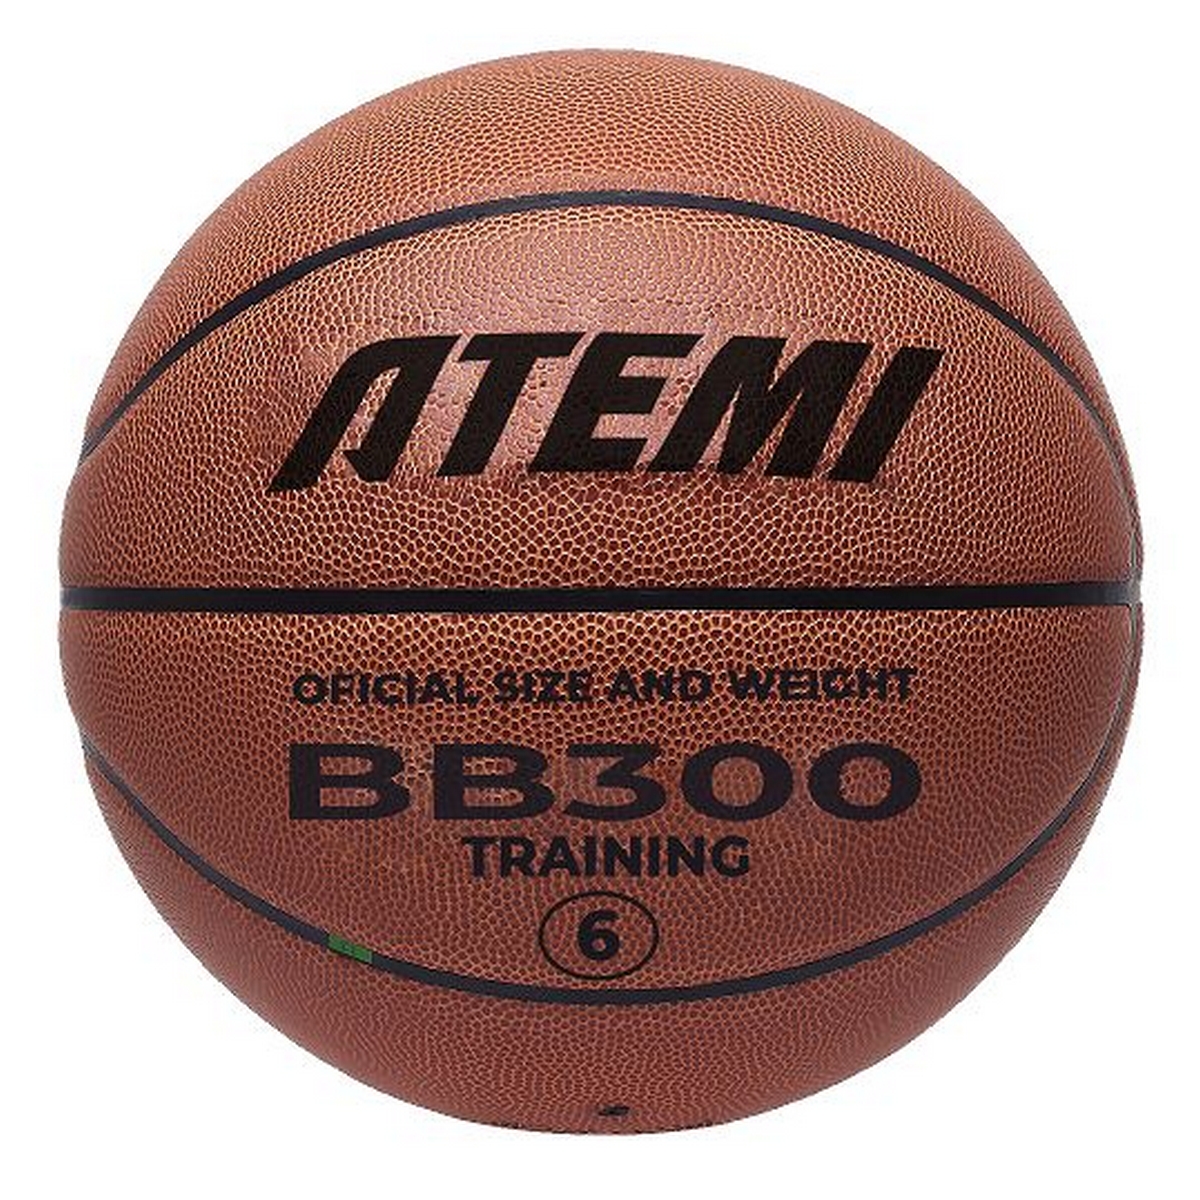   Atemi BB300N .6,  72-74